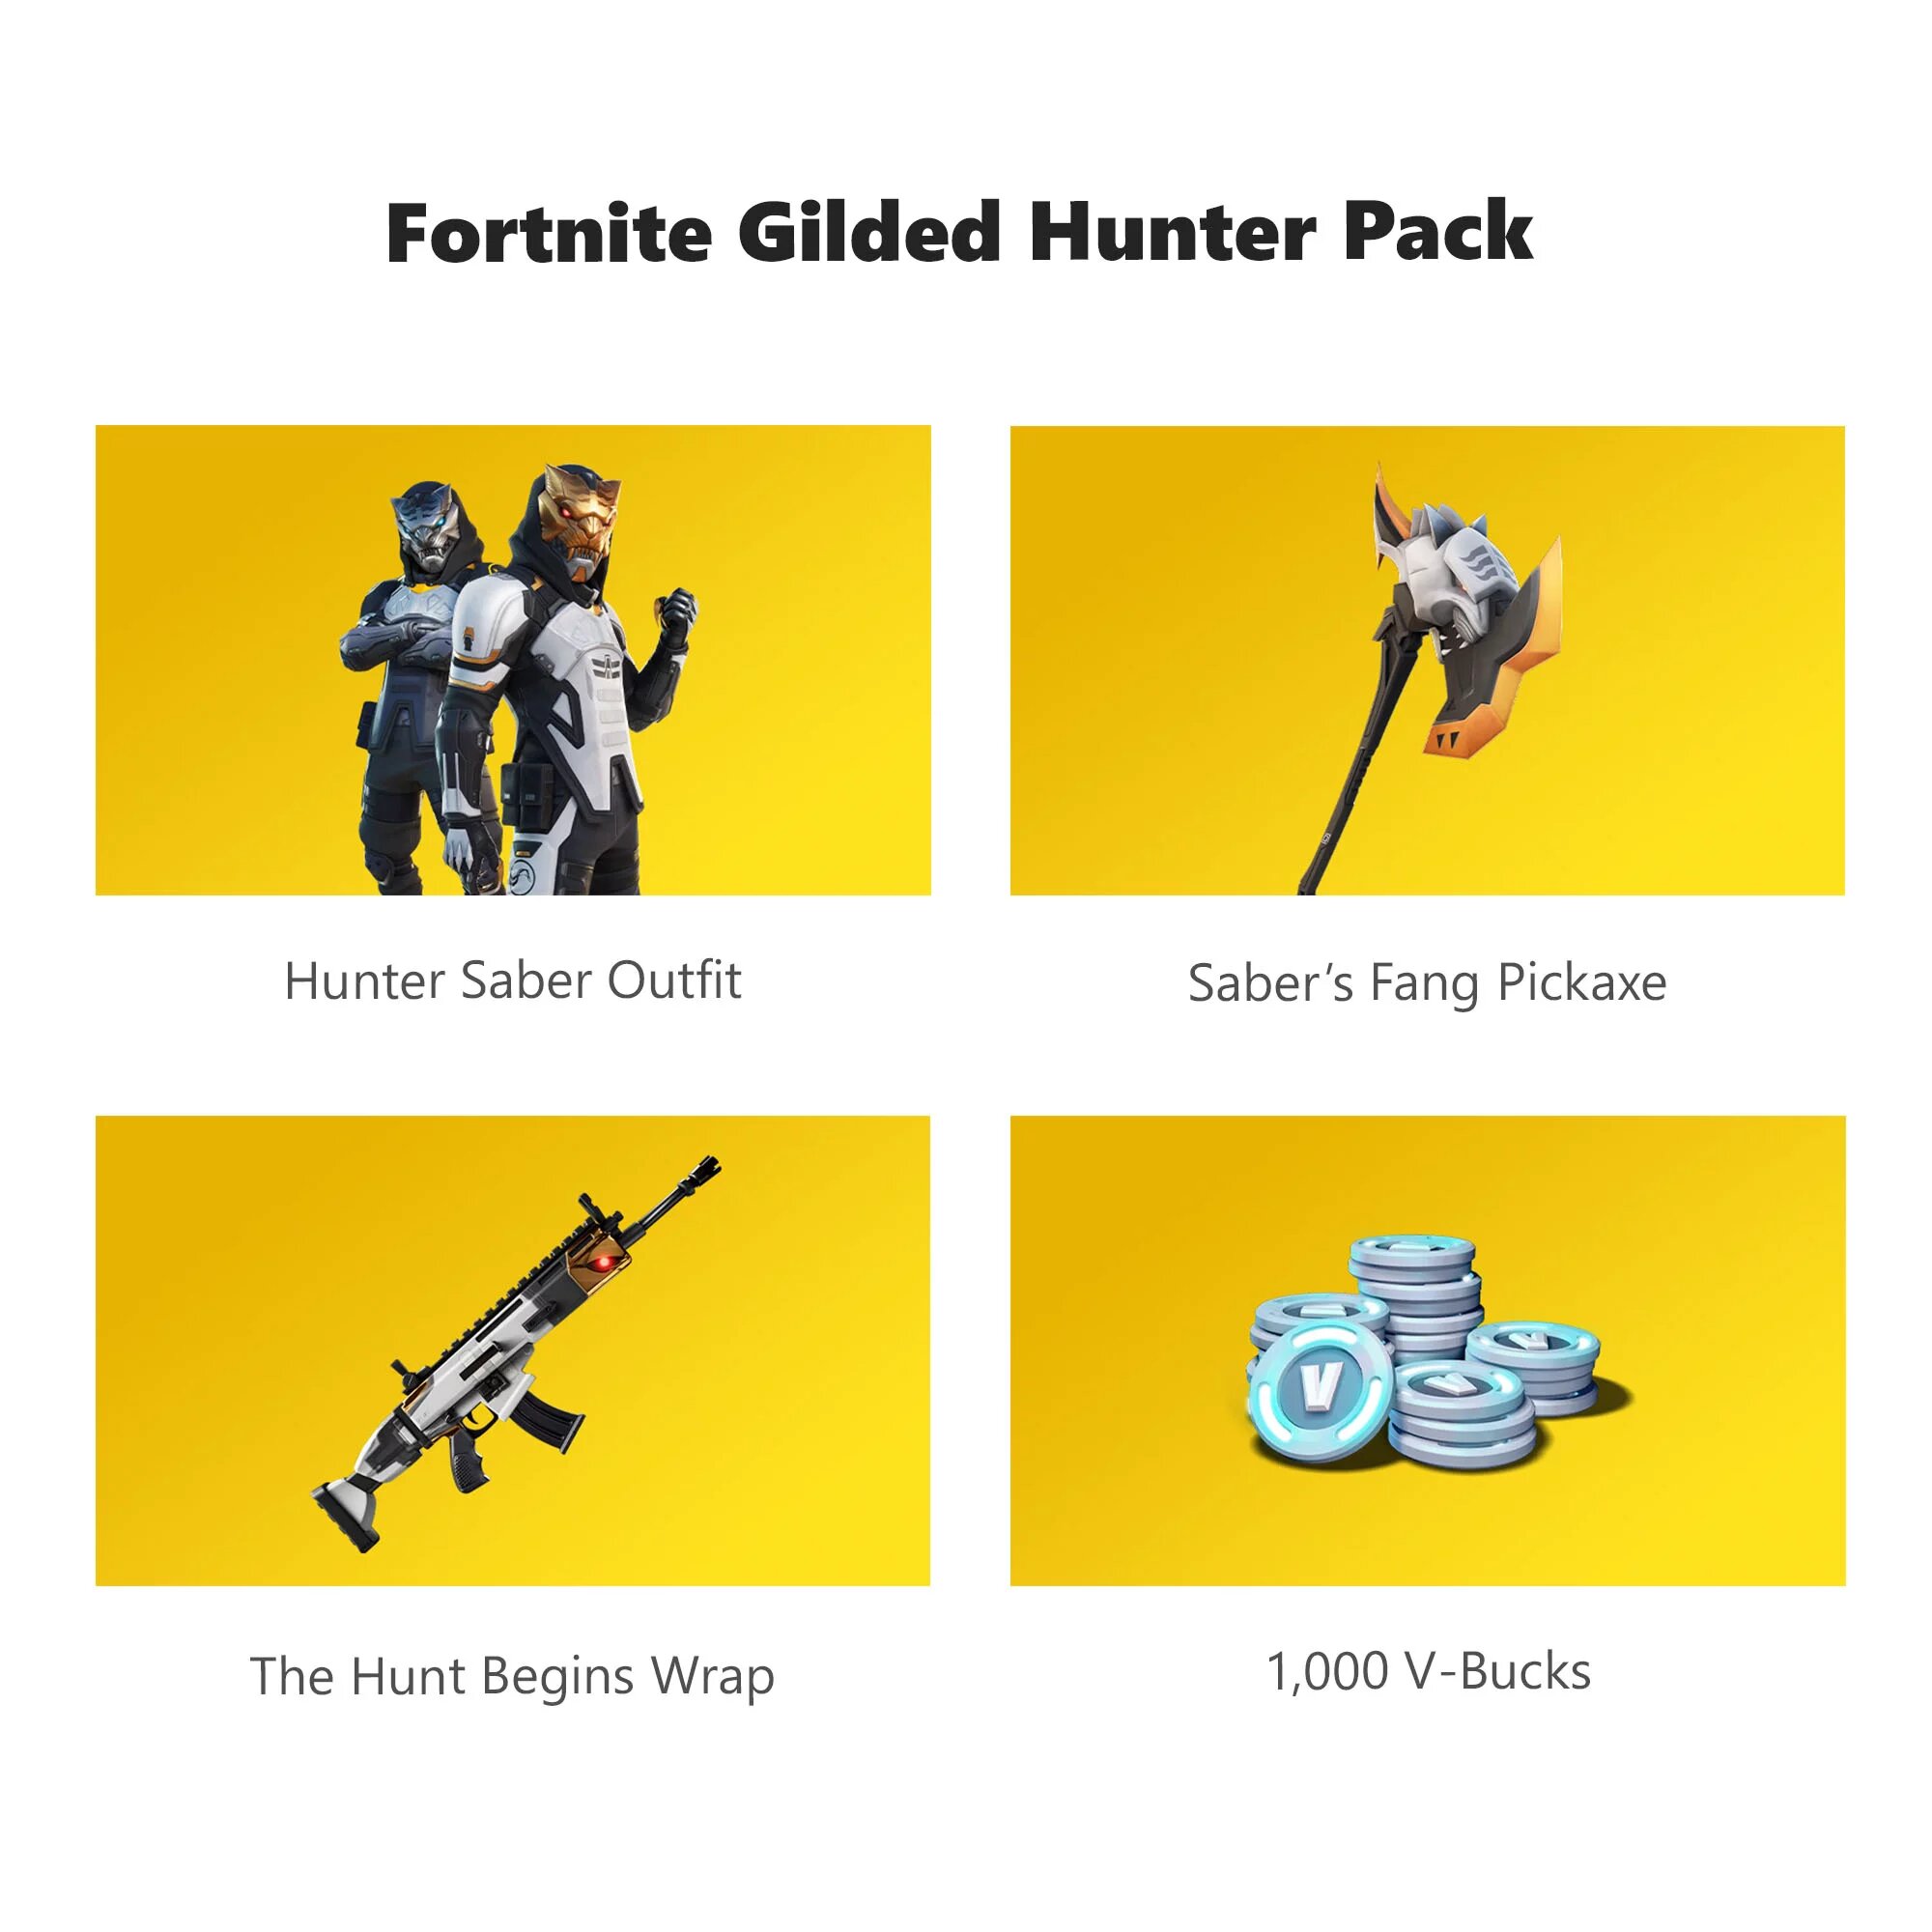 Fortnite Gilded Hunter Pack